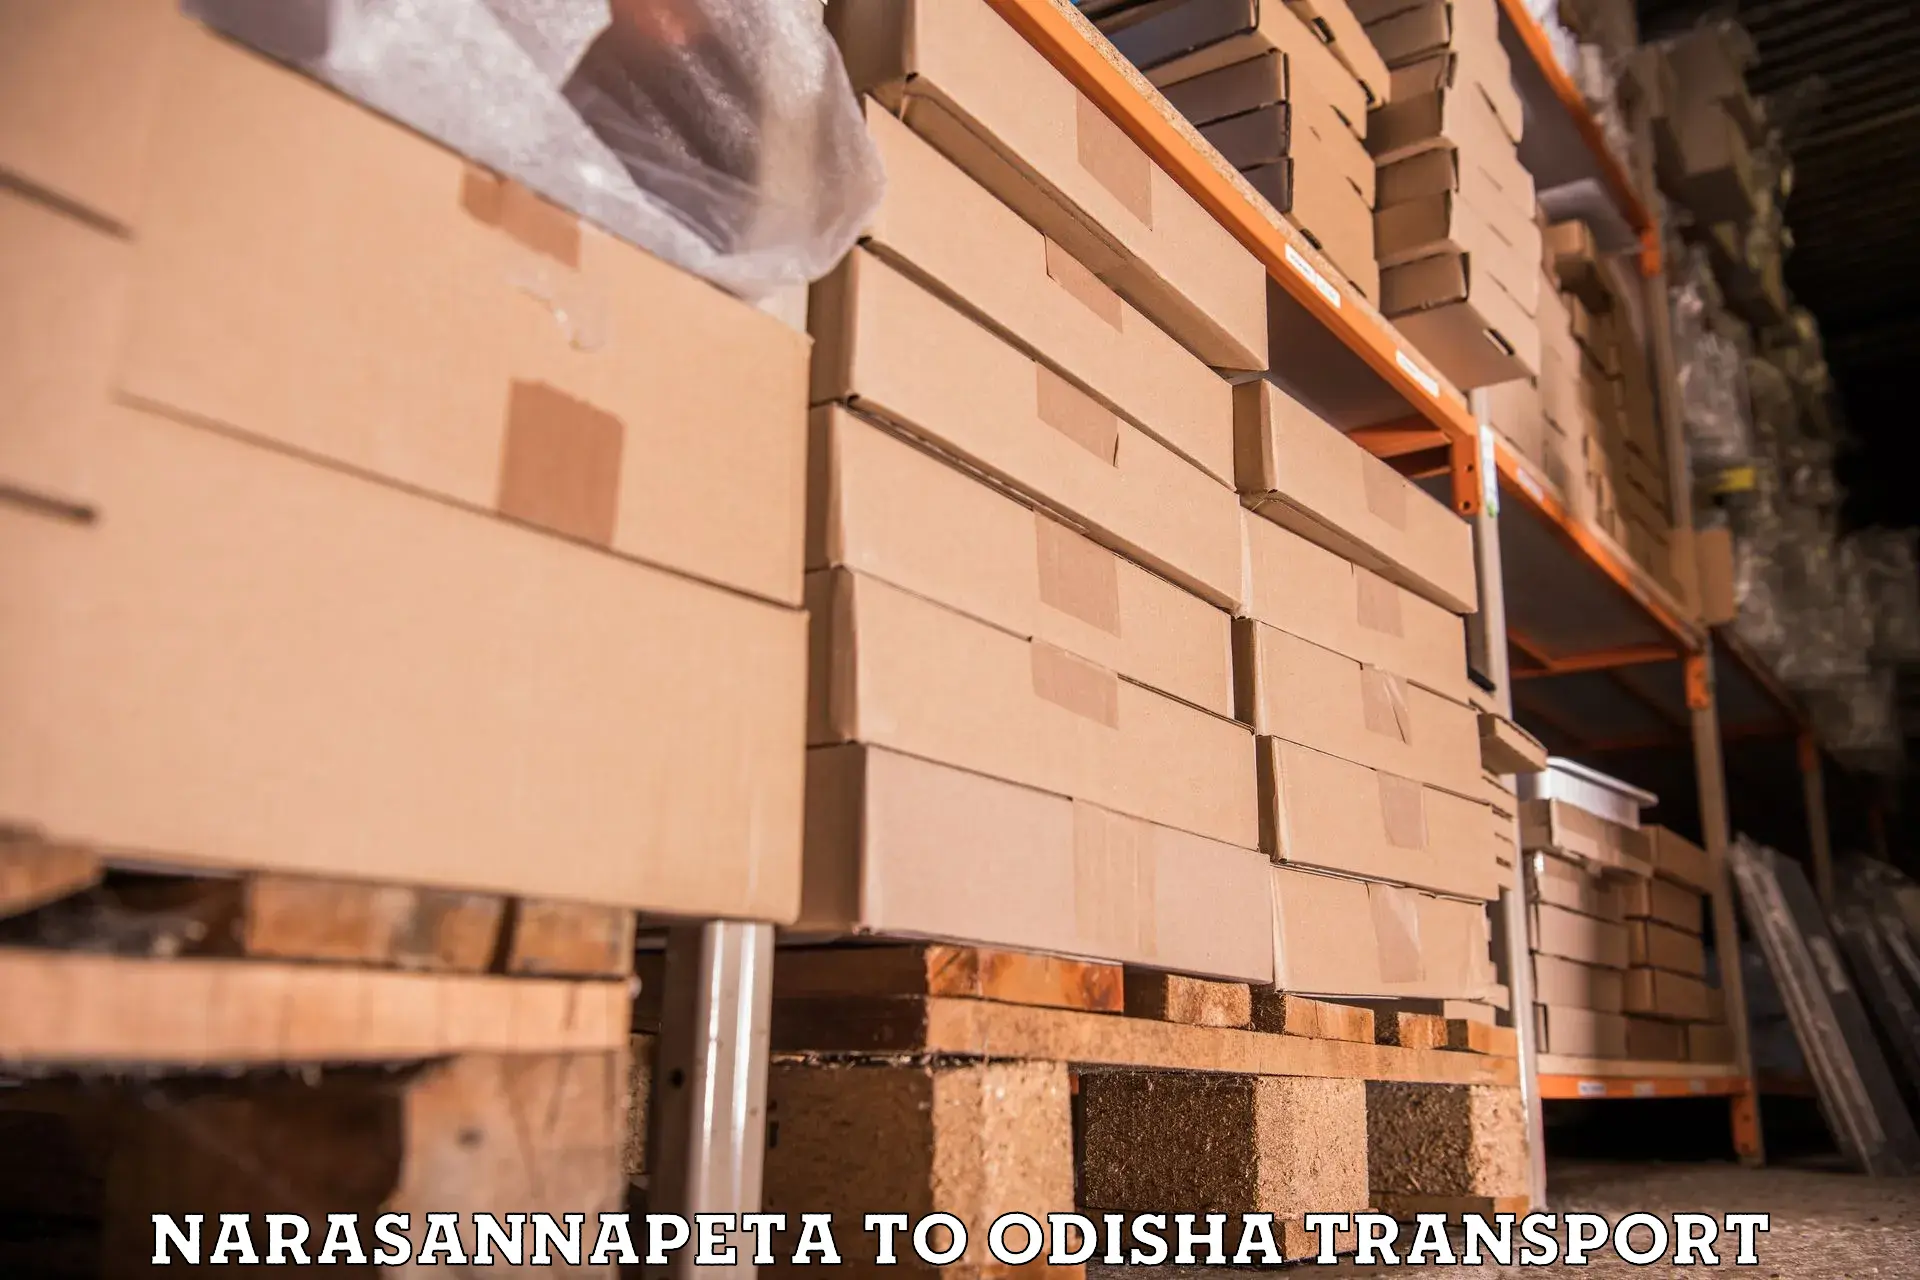 Furniture transport service Narasannapeta to Jashipur